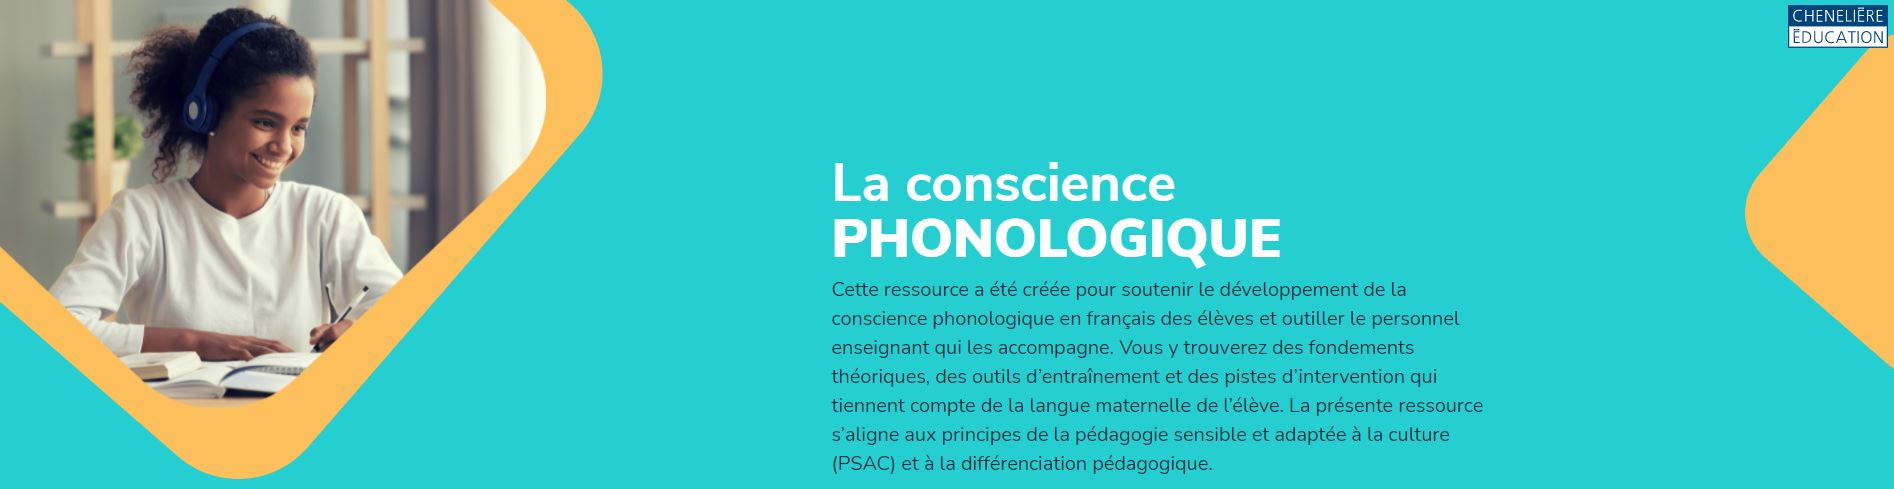 La conscience phonologique - Ressource pour le personnel enseignant